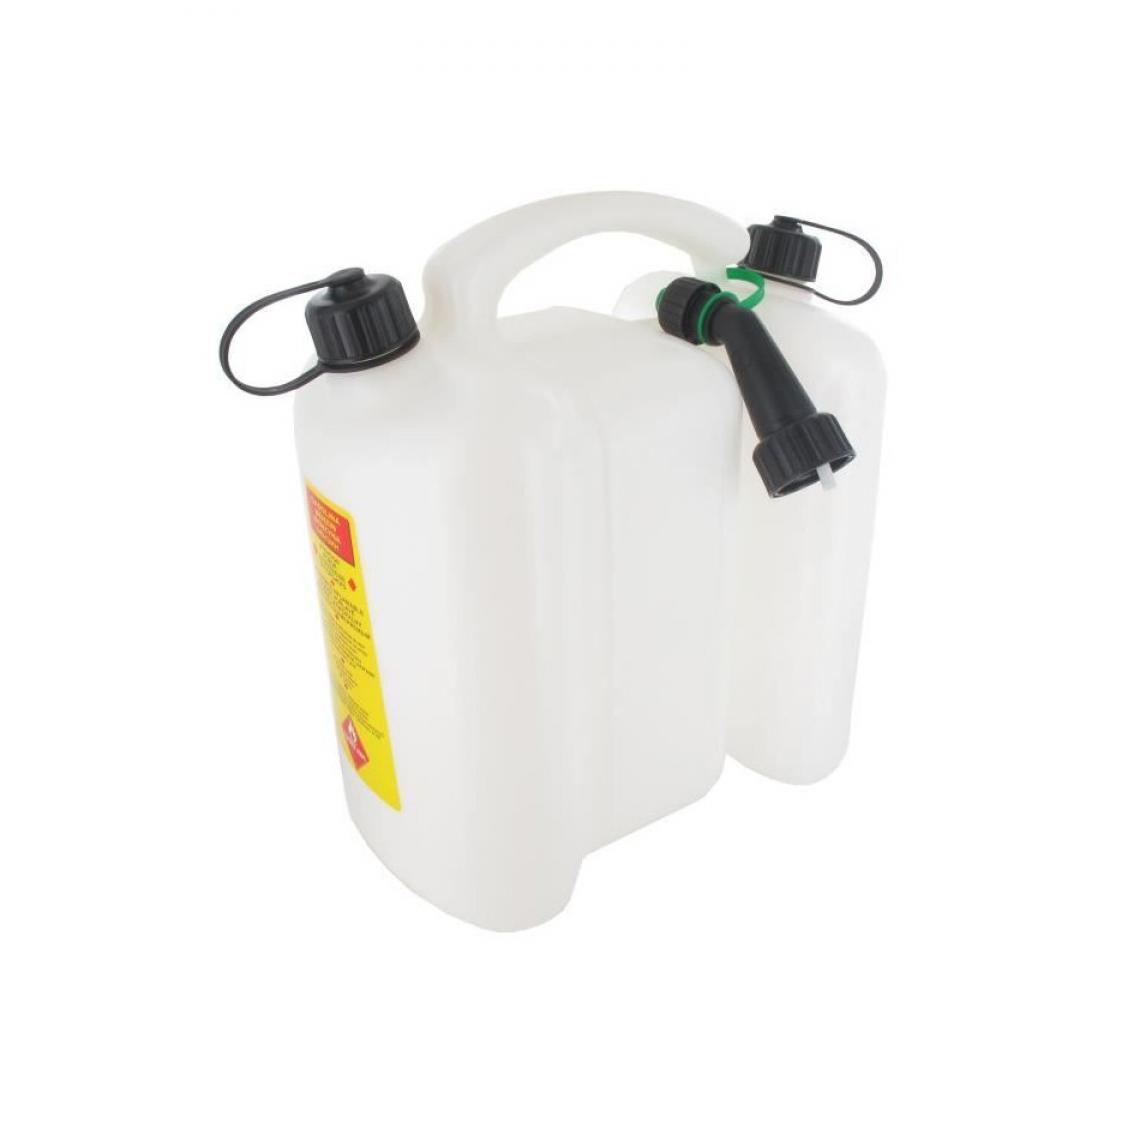 Cstore - JARDIN PRATIQUE Jerrican double usage 3 + 6 litres TECOMEC - Blanc - Matériel de pose, produits d'entretien